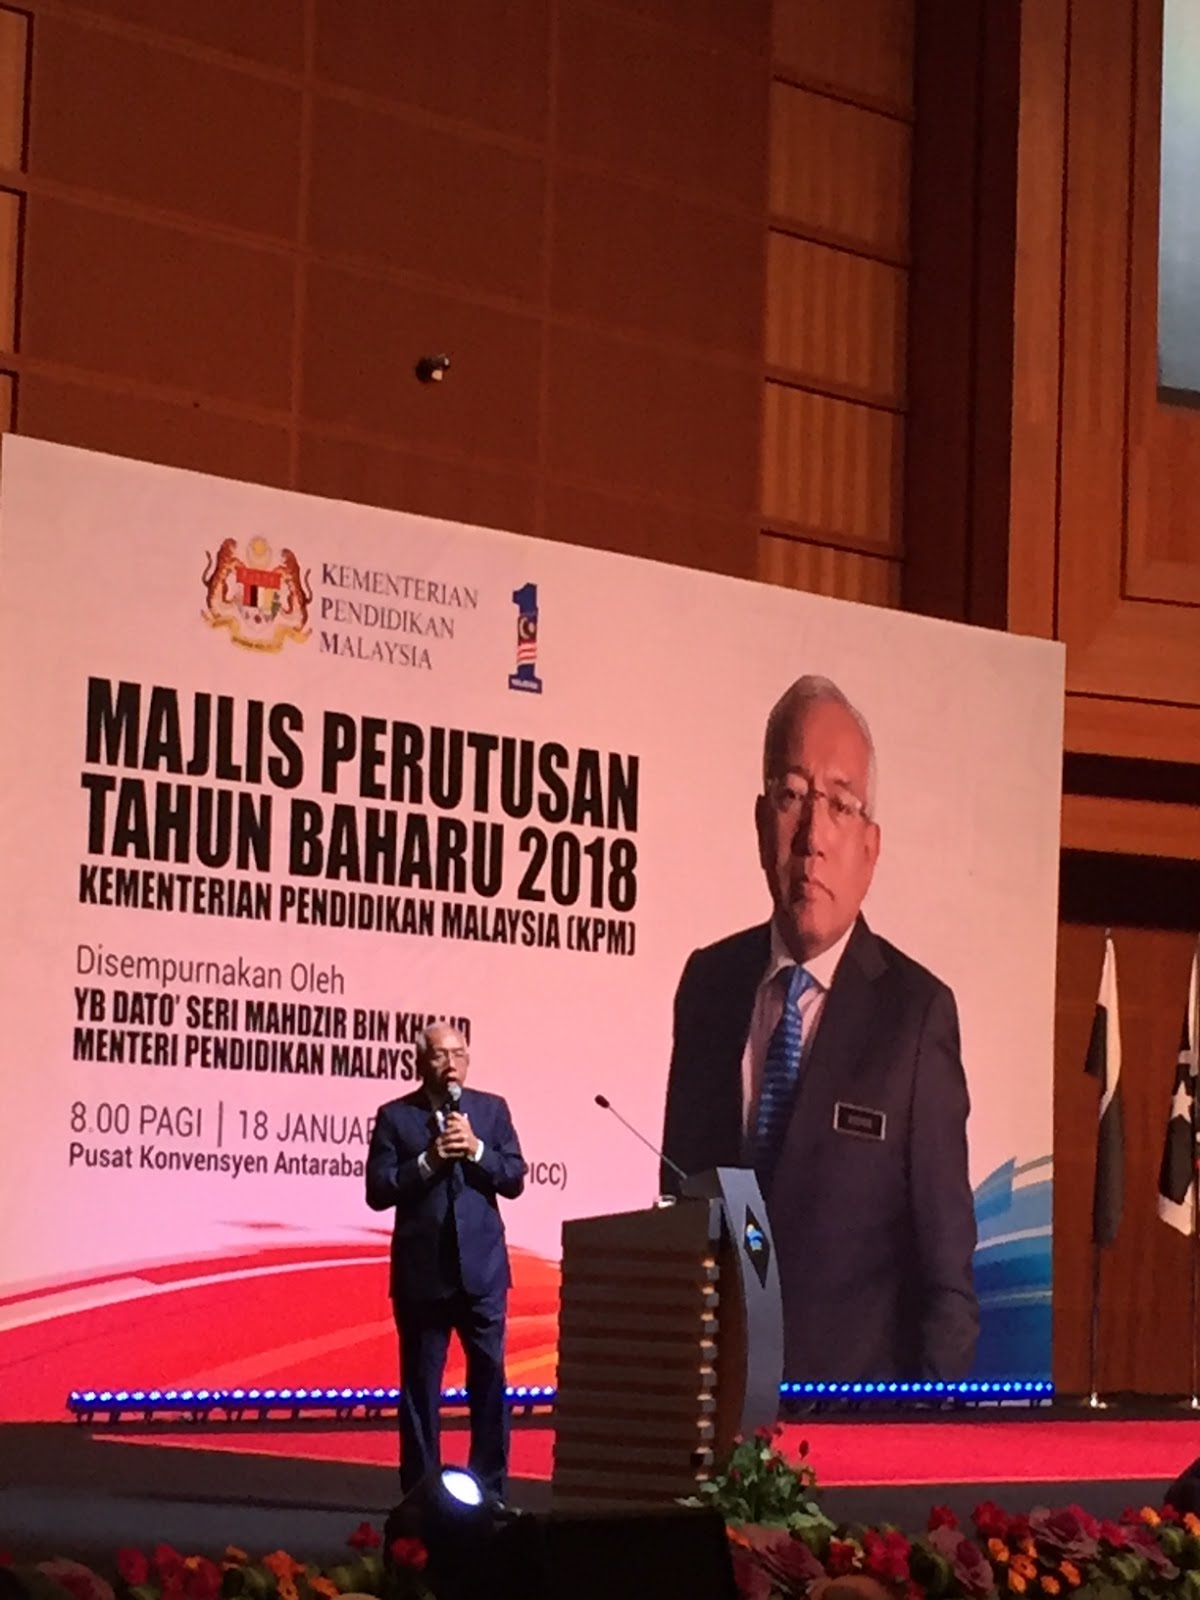 Majlis Guru Besar Selangor: January 2018